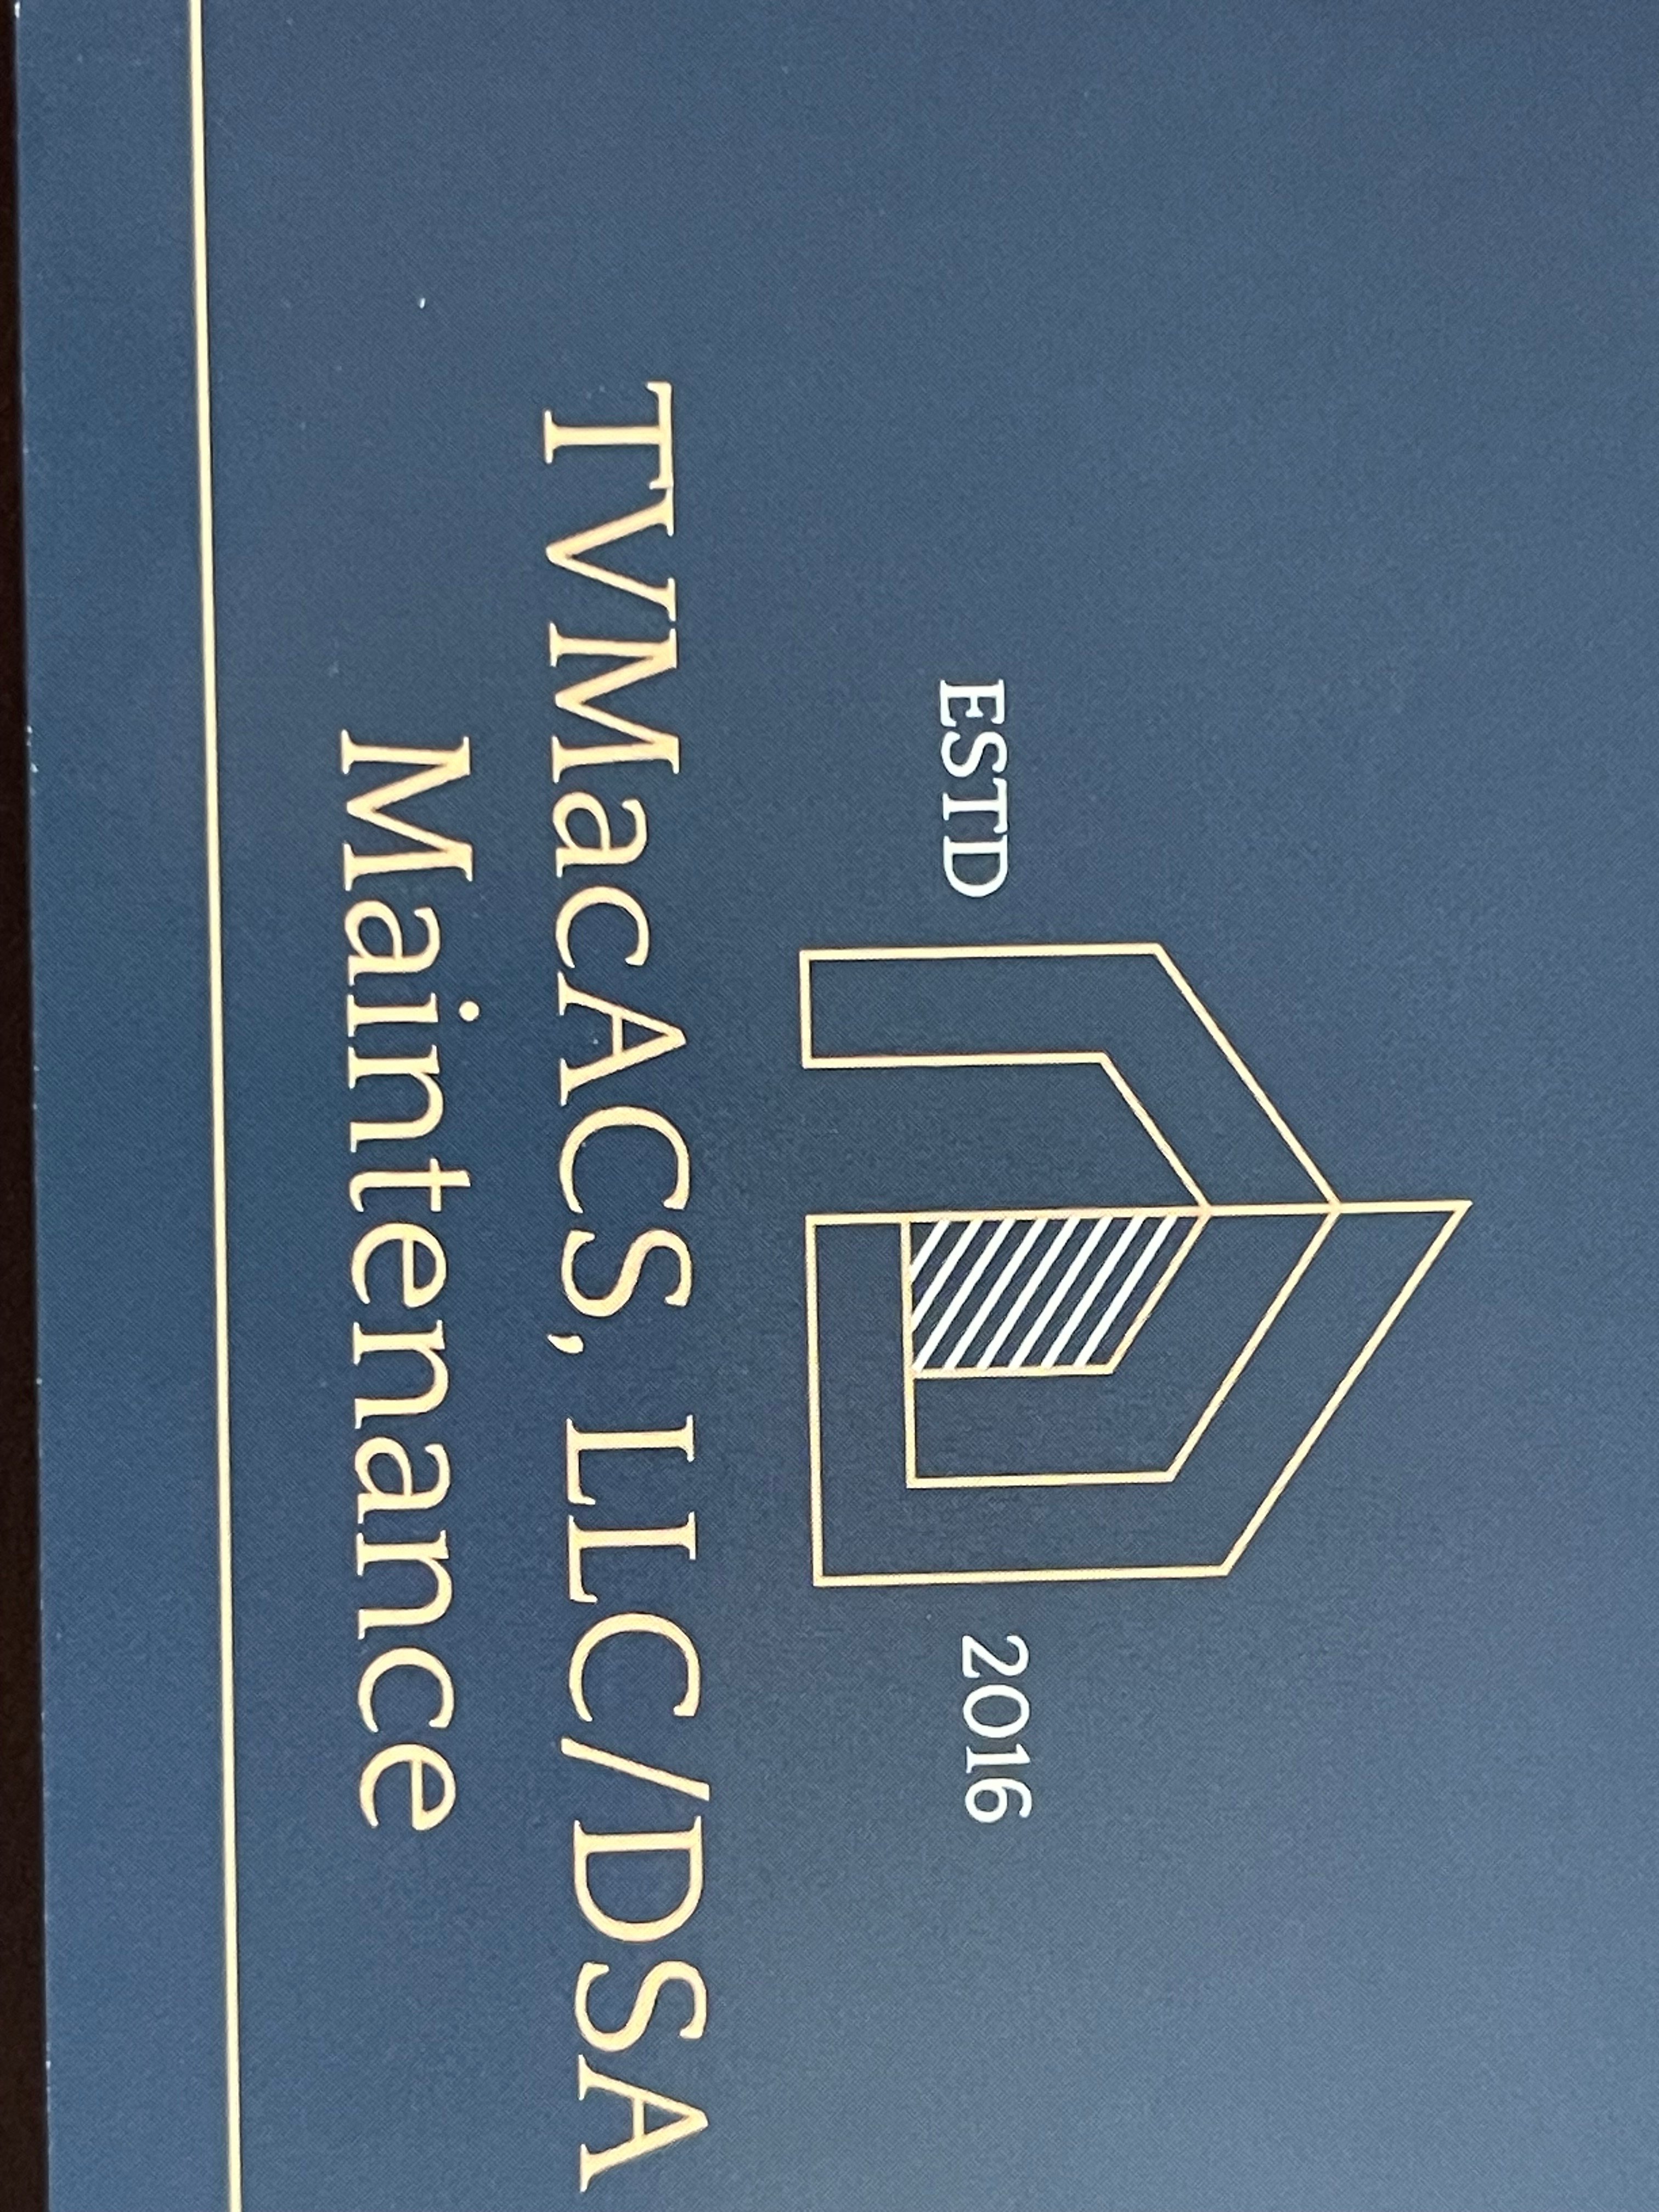 TVMacACS, LLC Logo